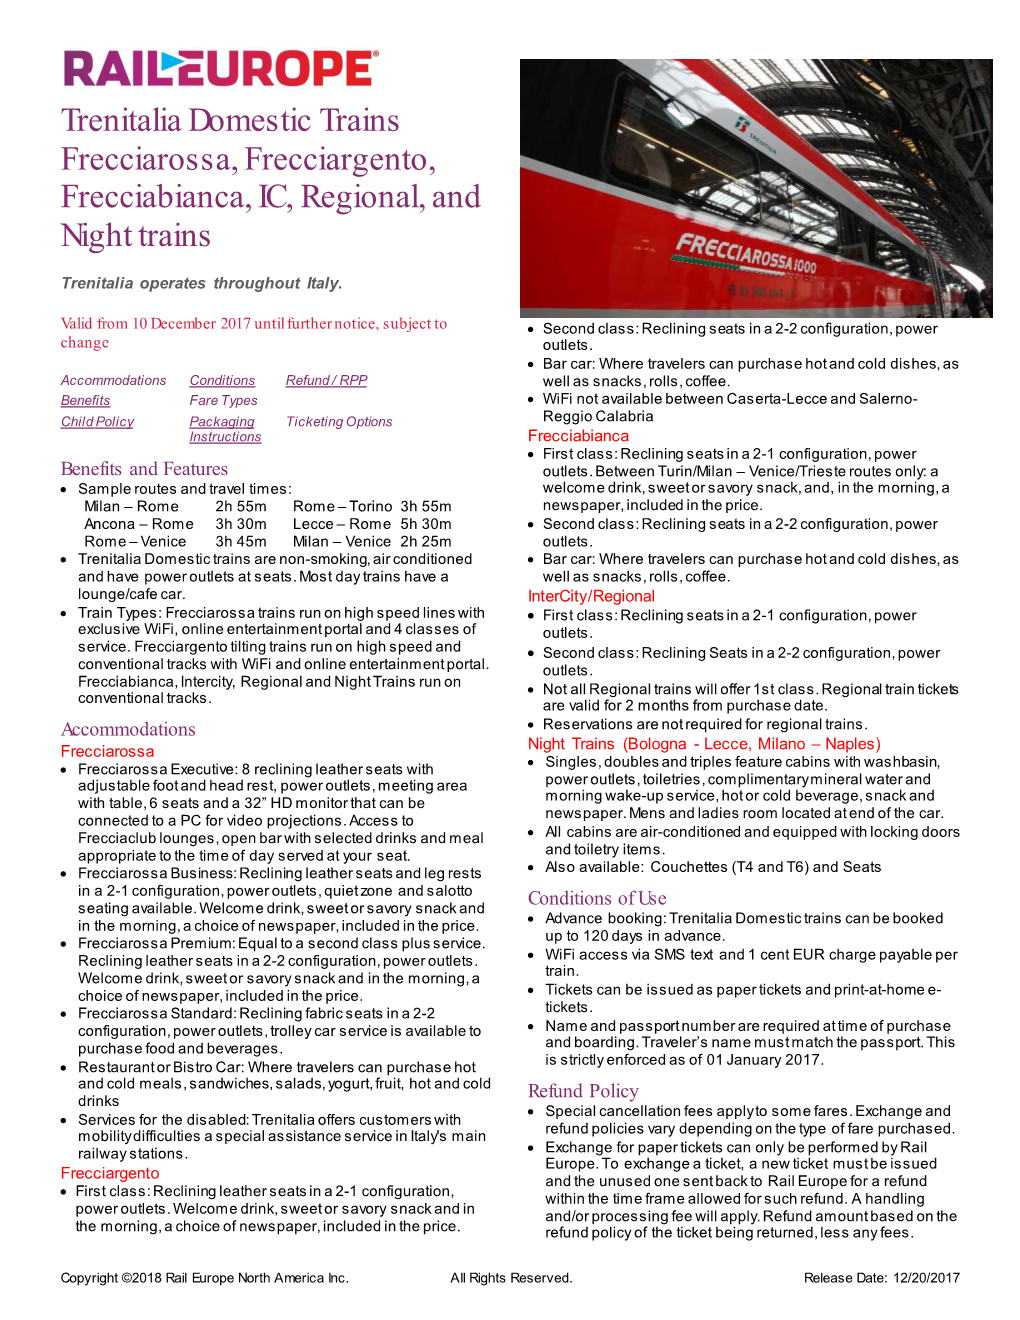 Trenitalia Domestic Trains Frecciarossa, Frecciargento, Frecciabianca, IC, Regional, and Night Trains